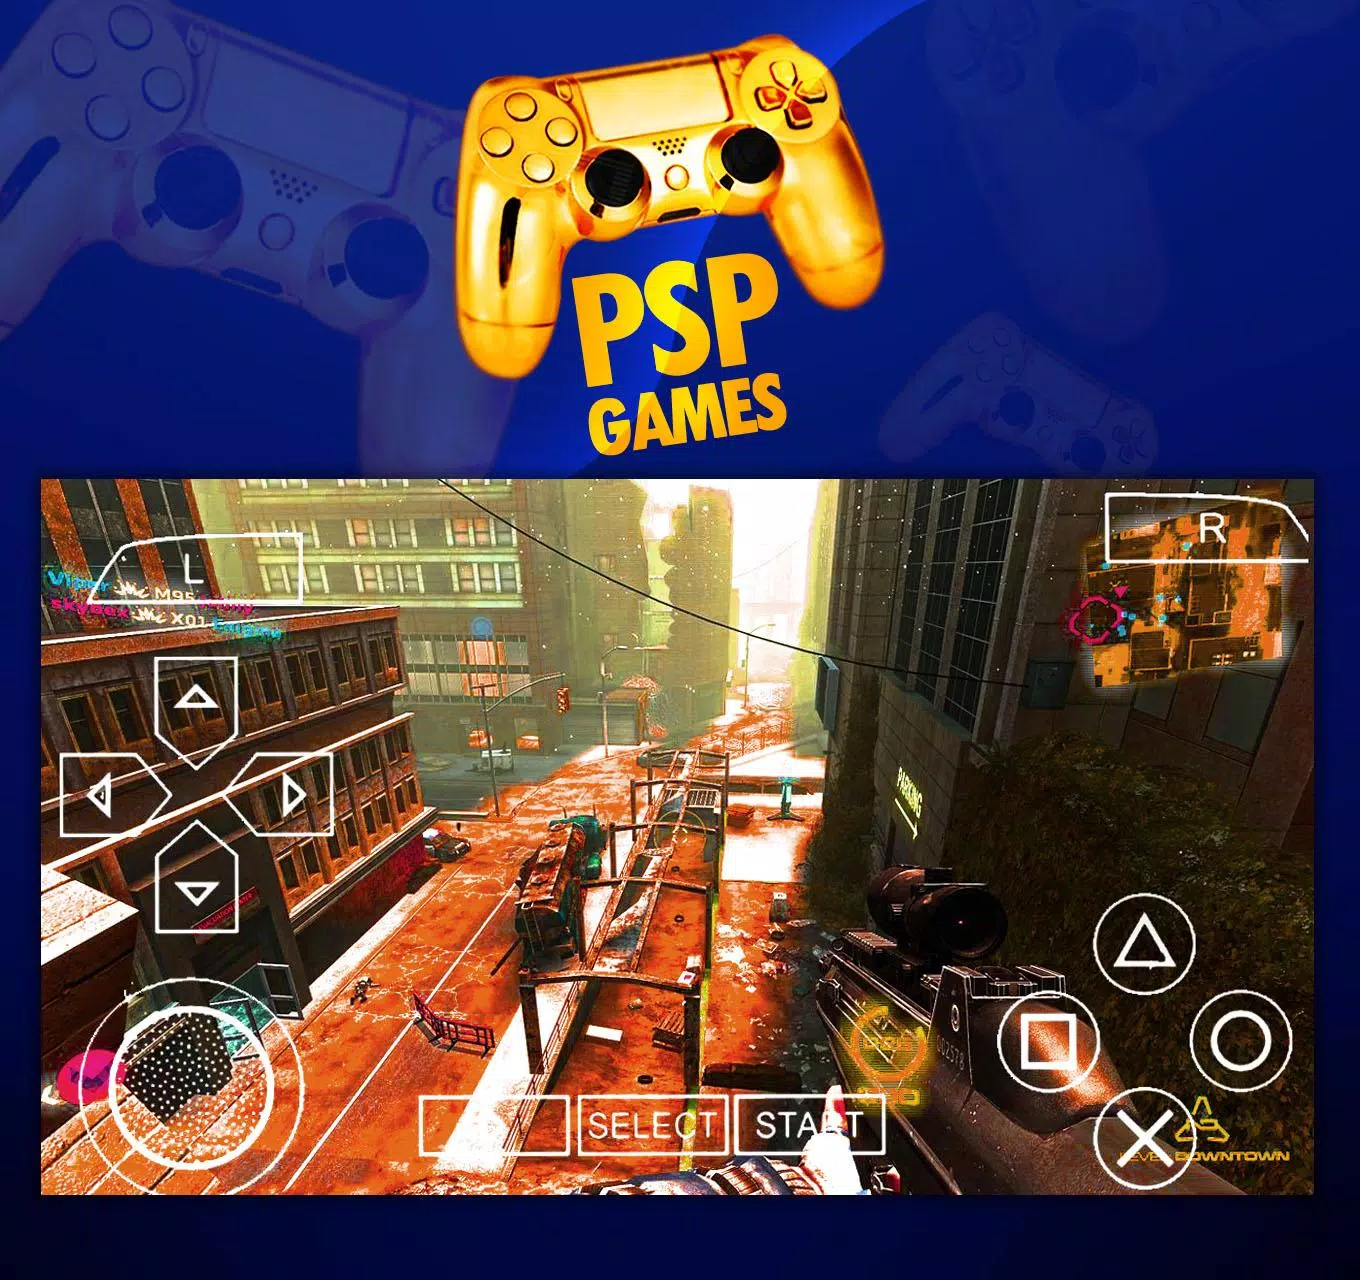 Golden PSP Emulator 2018 - Android PSP Emulator APK for Android Download